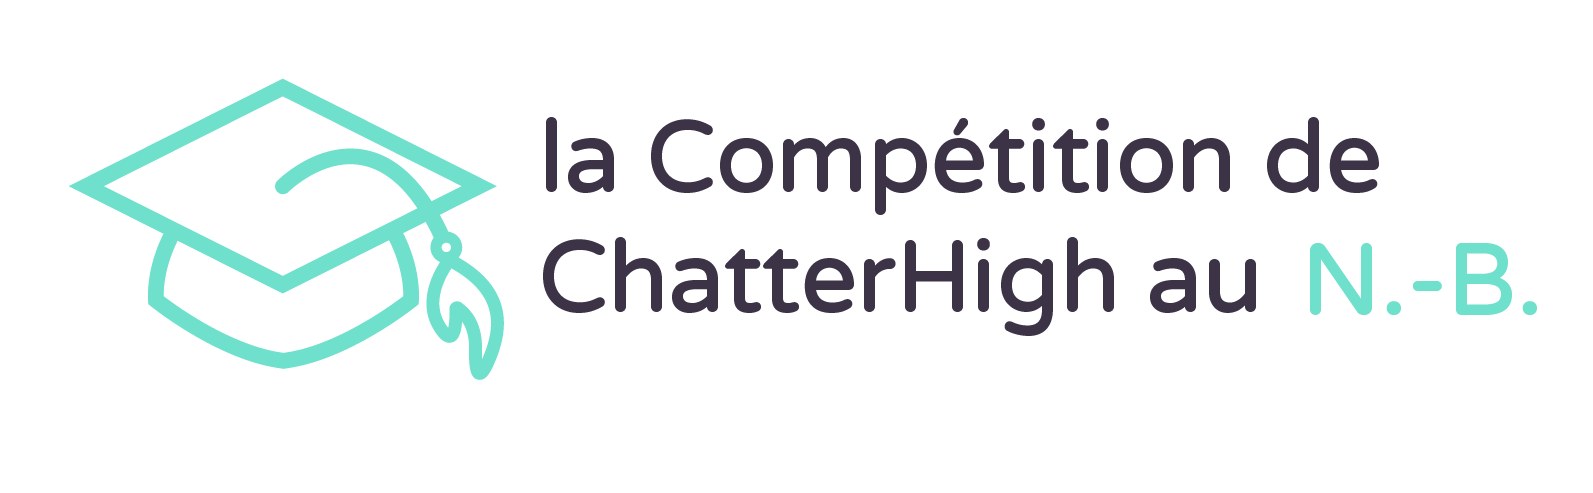 La Compétition de ChatterHigh au N.-B.